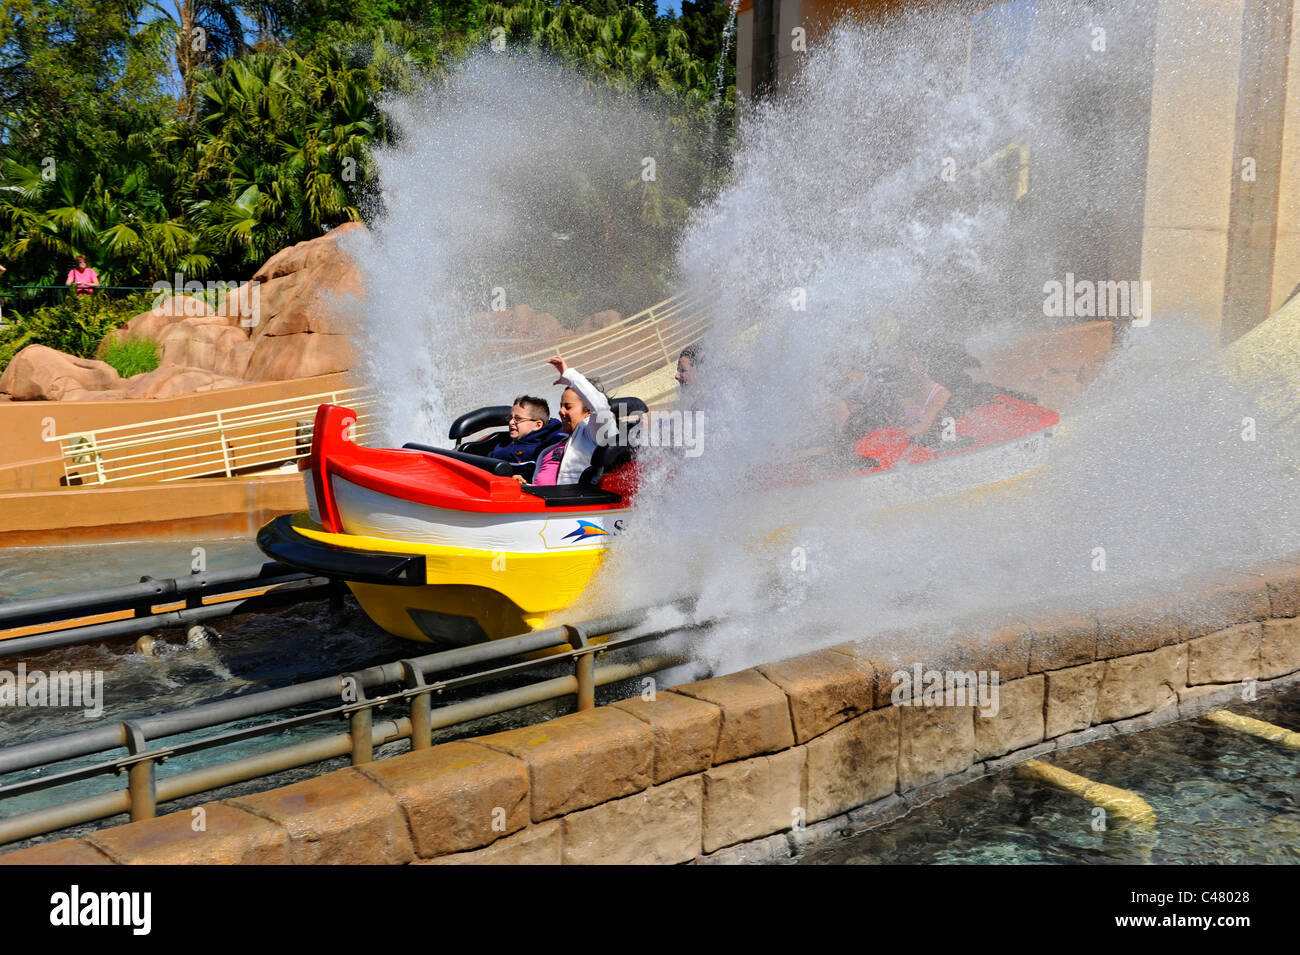 Le parc à thème Sea World Orlando Floride Voyage vers Atlantis rollder coaster de bateau Banque D'Images